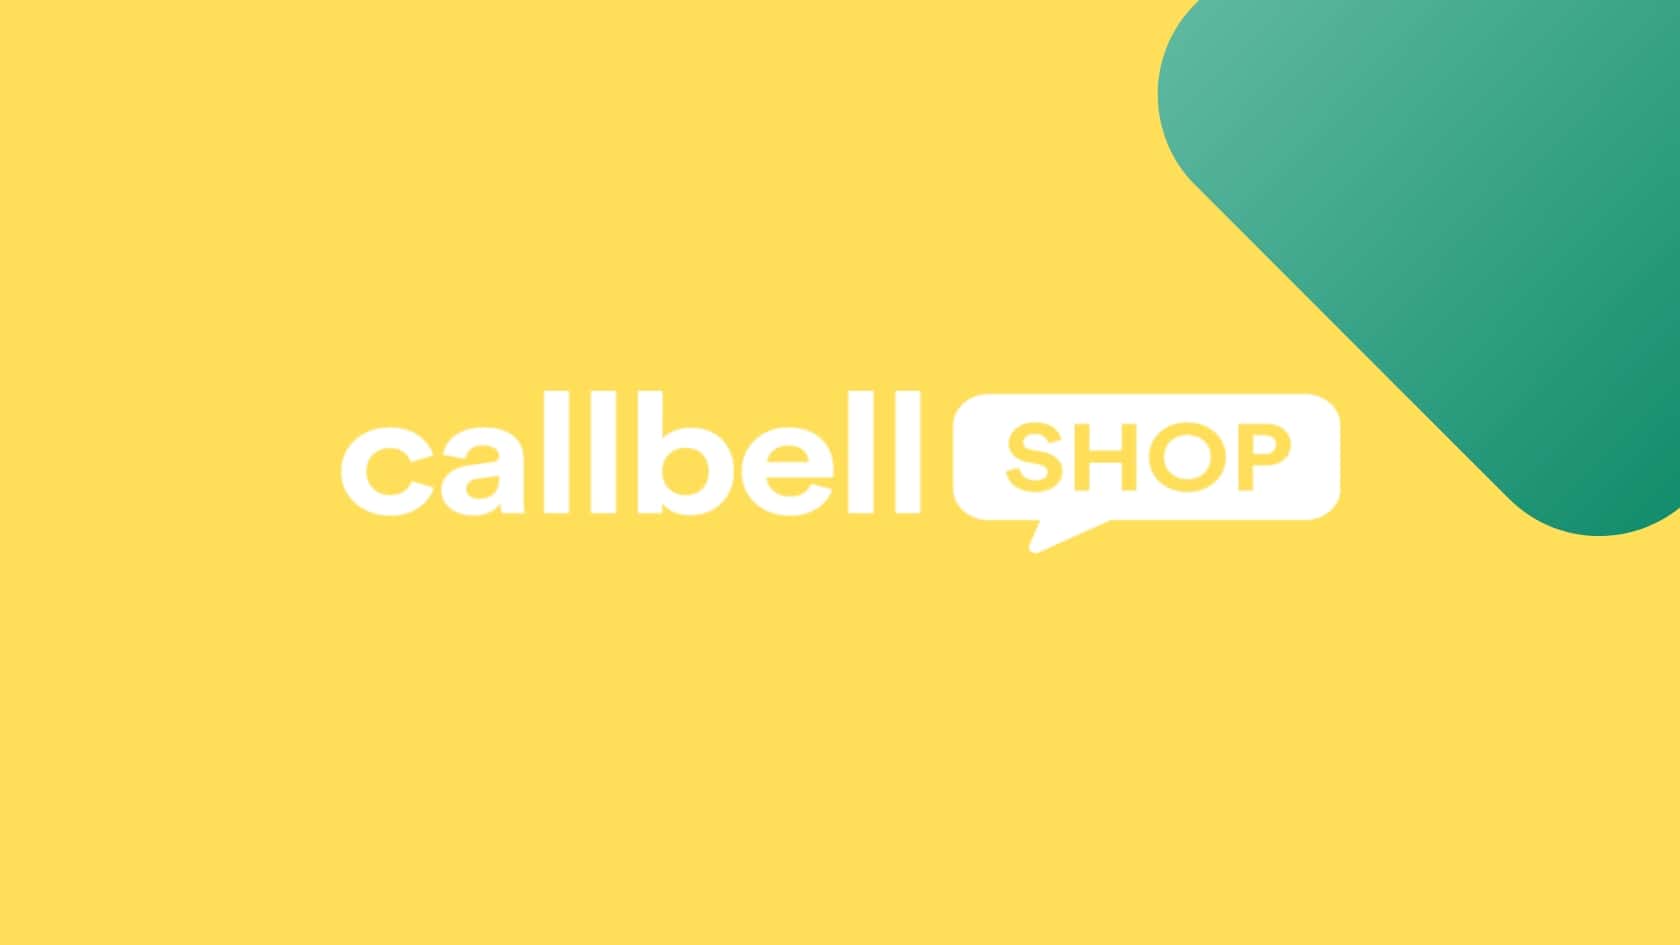 Optimisez le processus d’achat de votre boutique virtuelle avec Callbell Shop